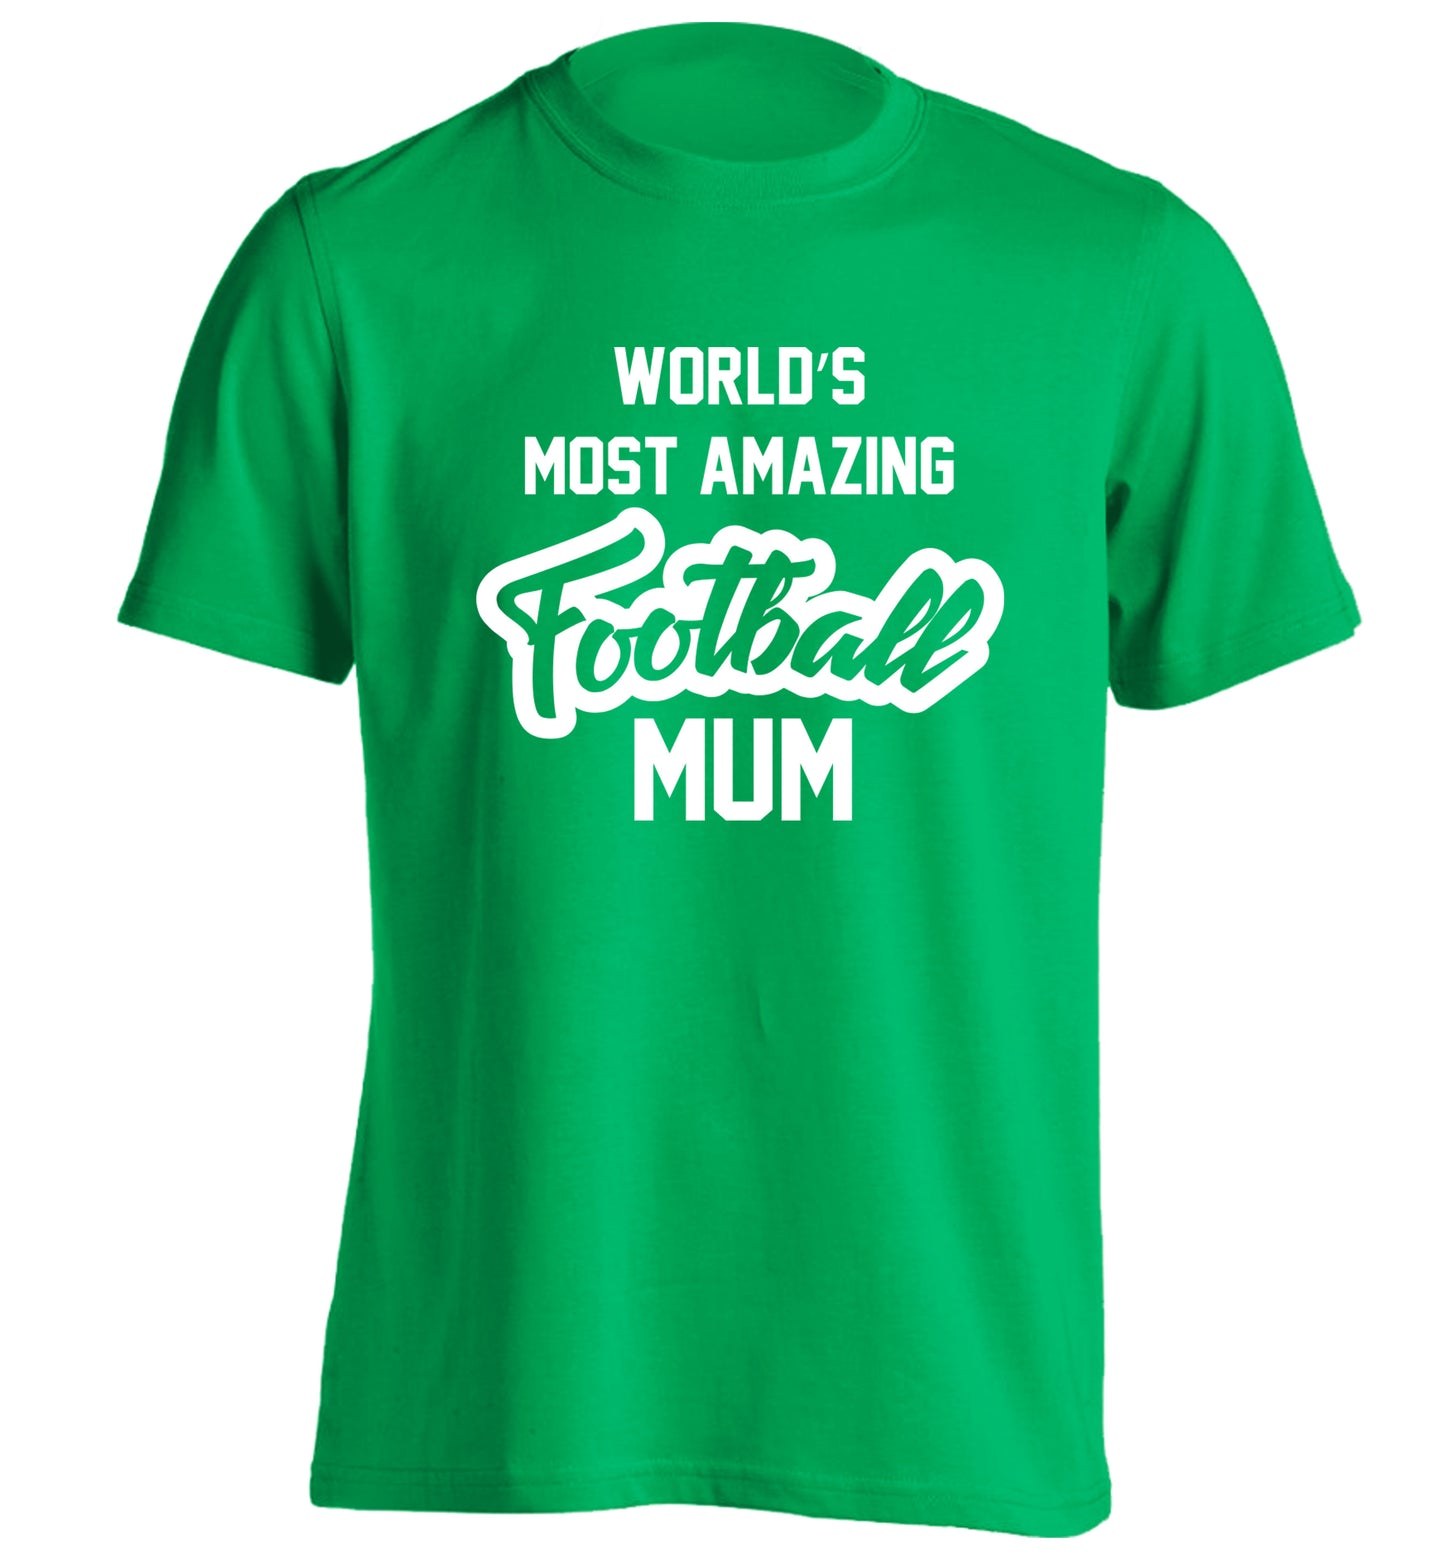 Worlds most amazing football mum adults unisexgreen Tshirt 2XL